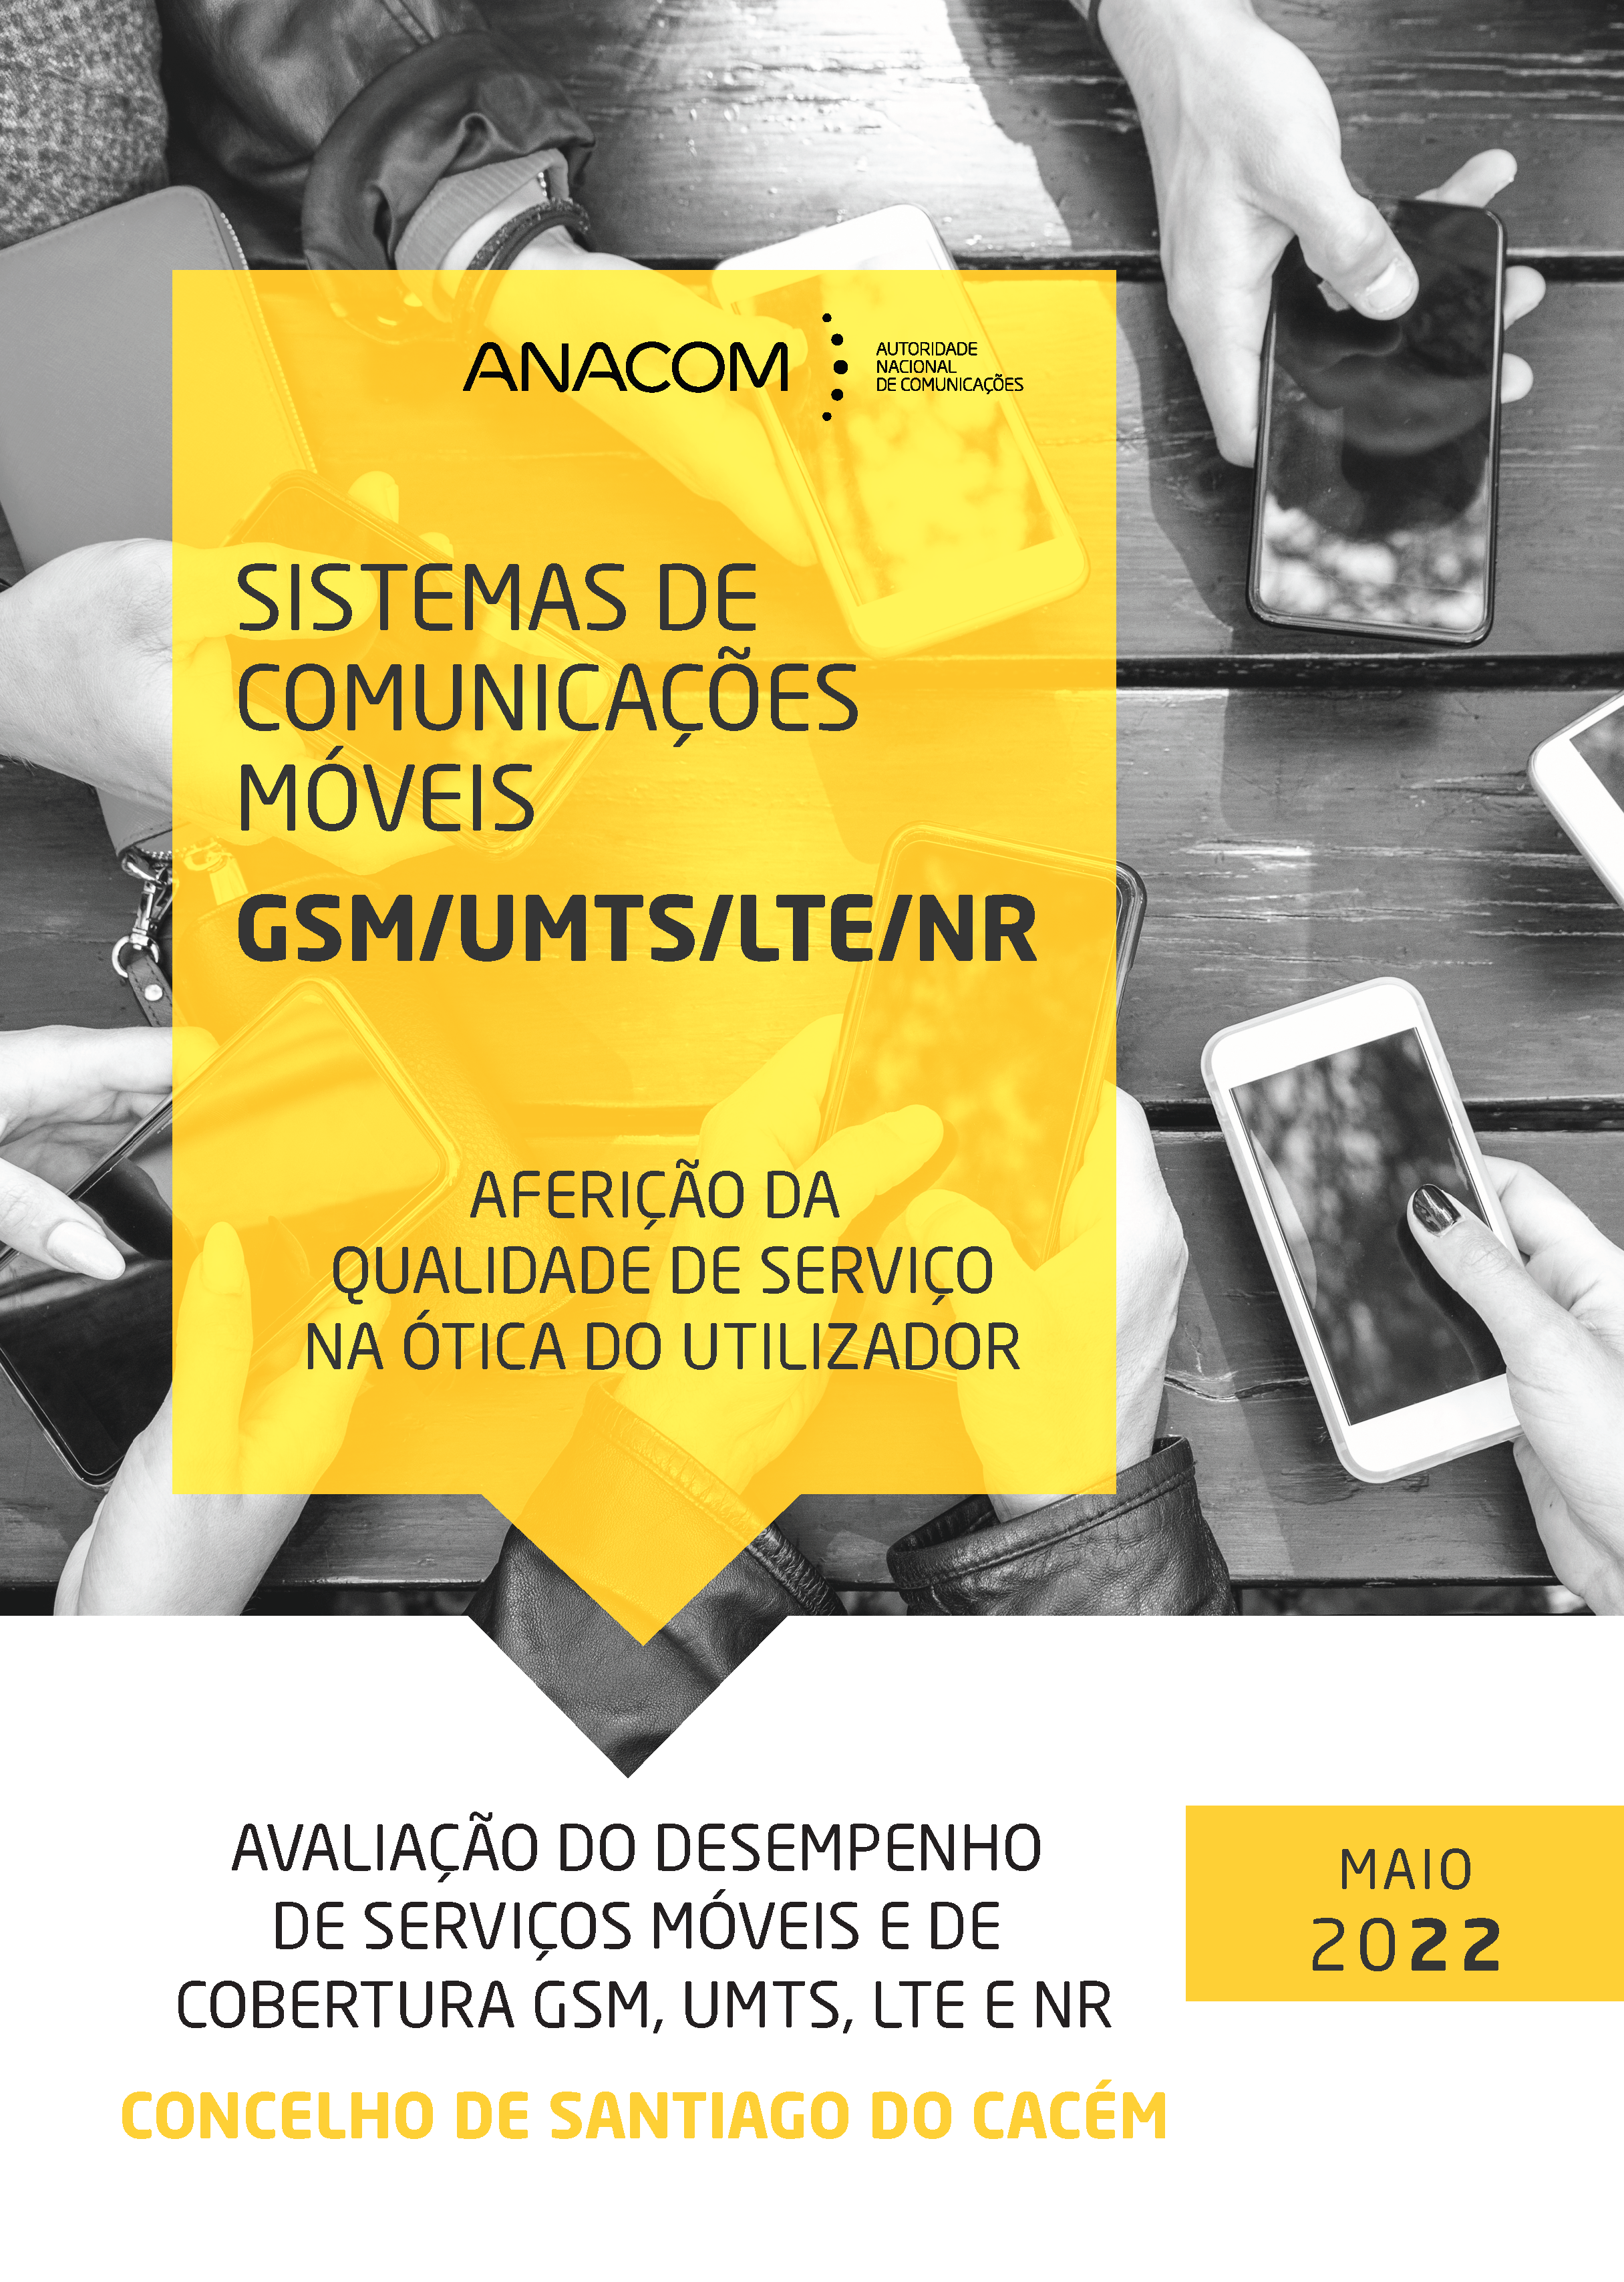 Avaliação do desempenho de serviços móveis e de cobertura GSM, UMTS, LTE e NR no Concelho de Santiago do Cacém